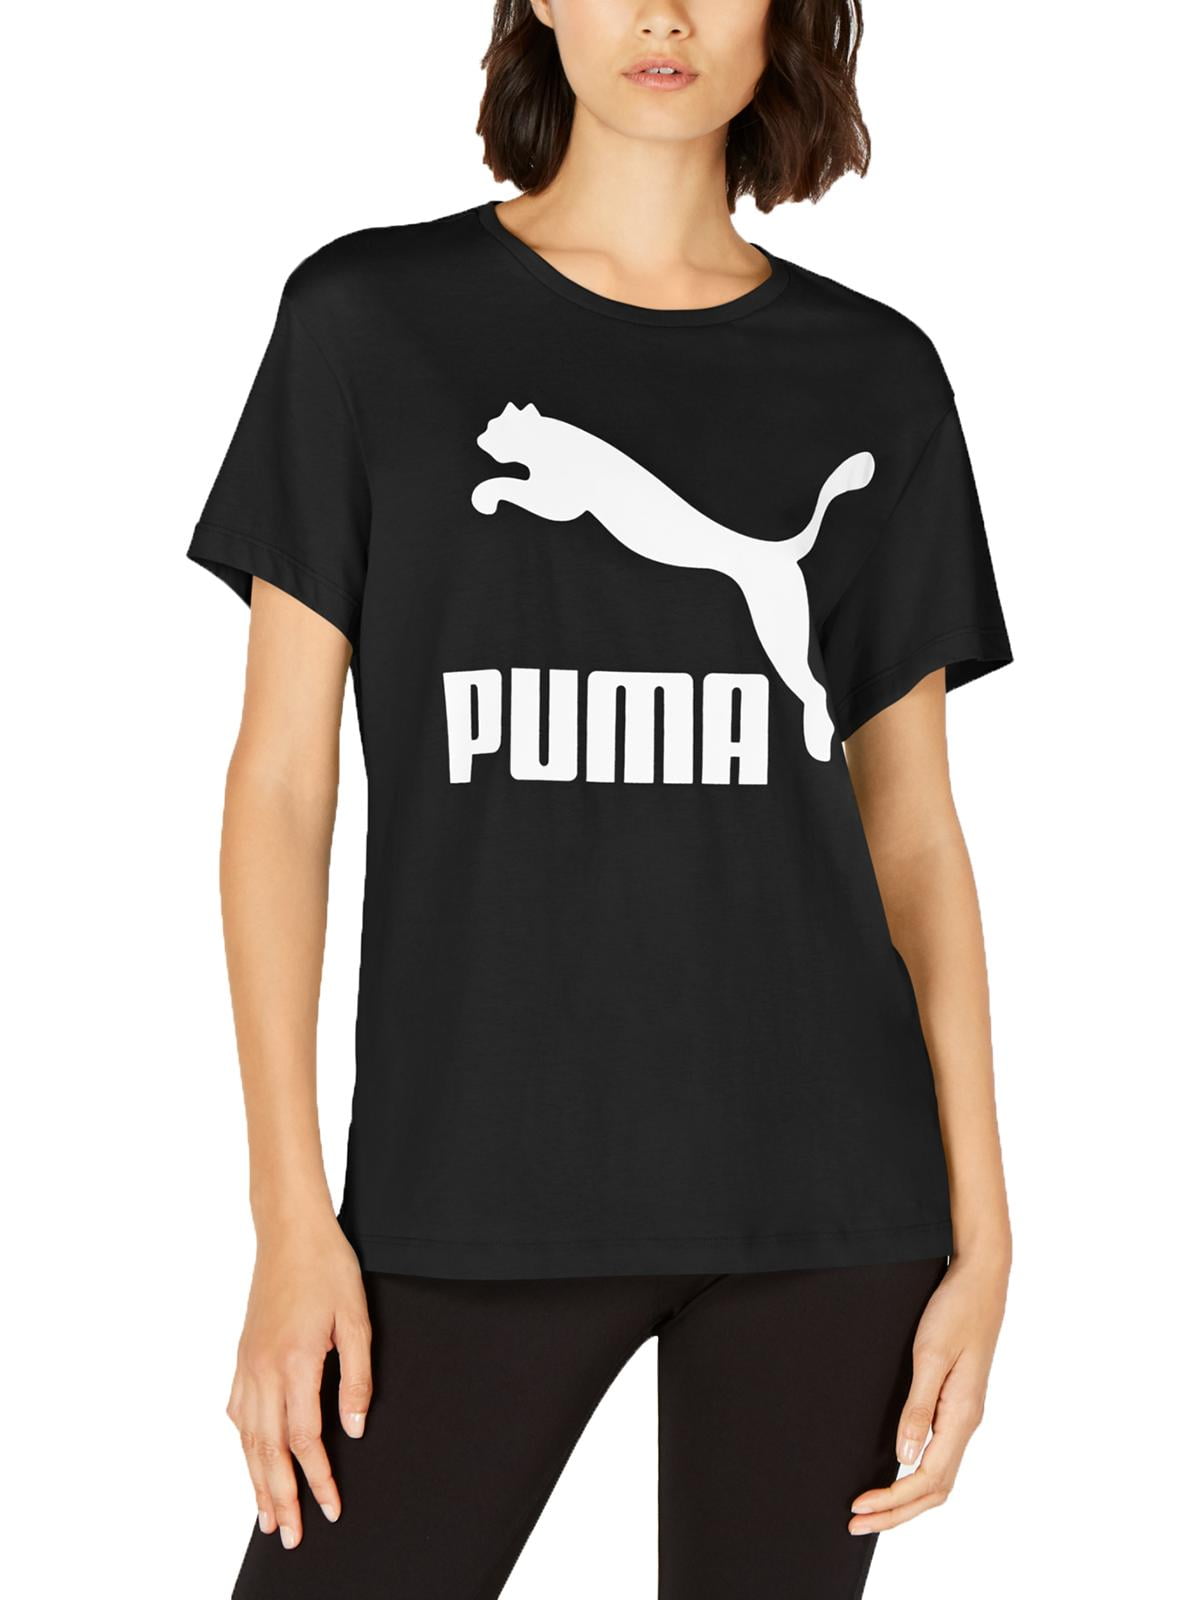 puma womens clothing